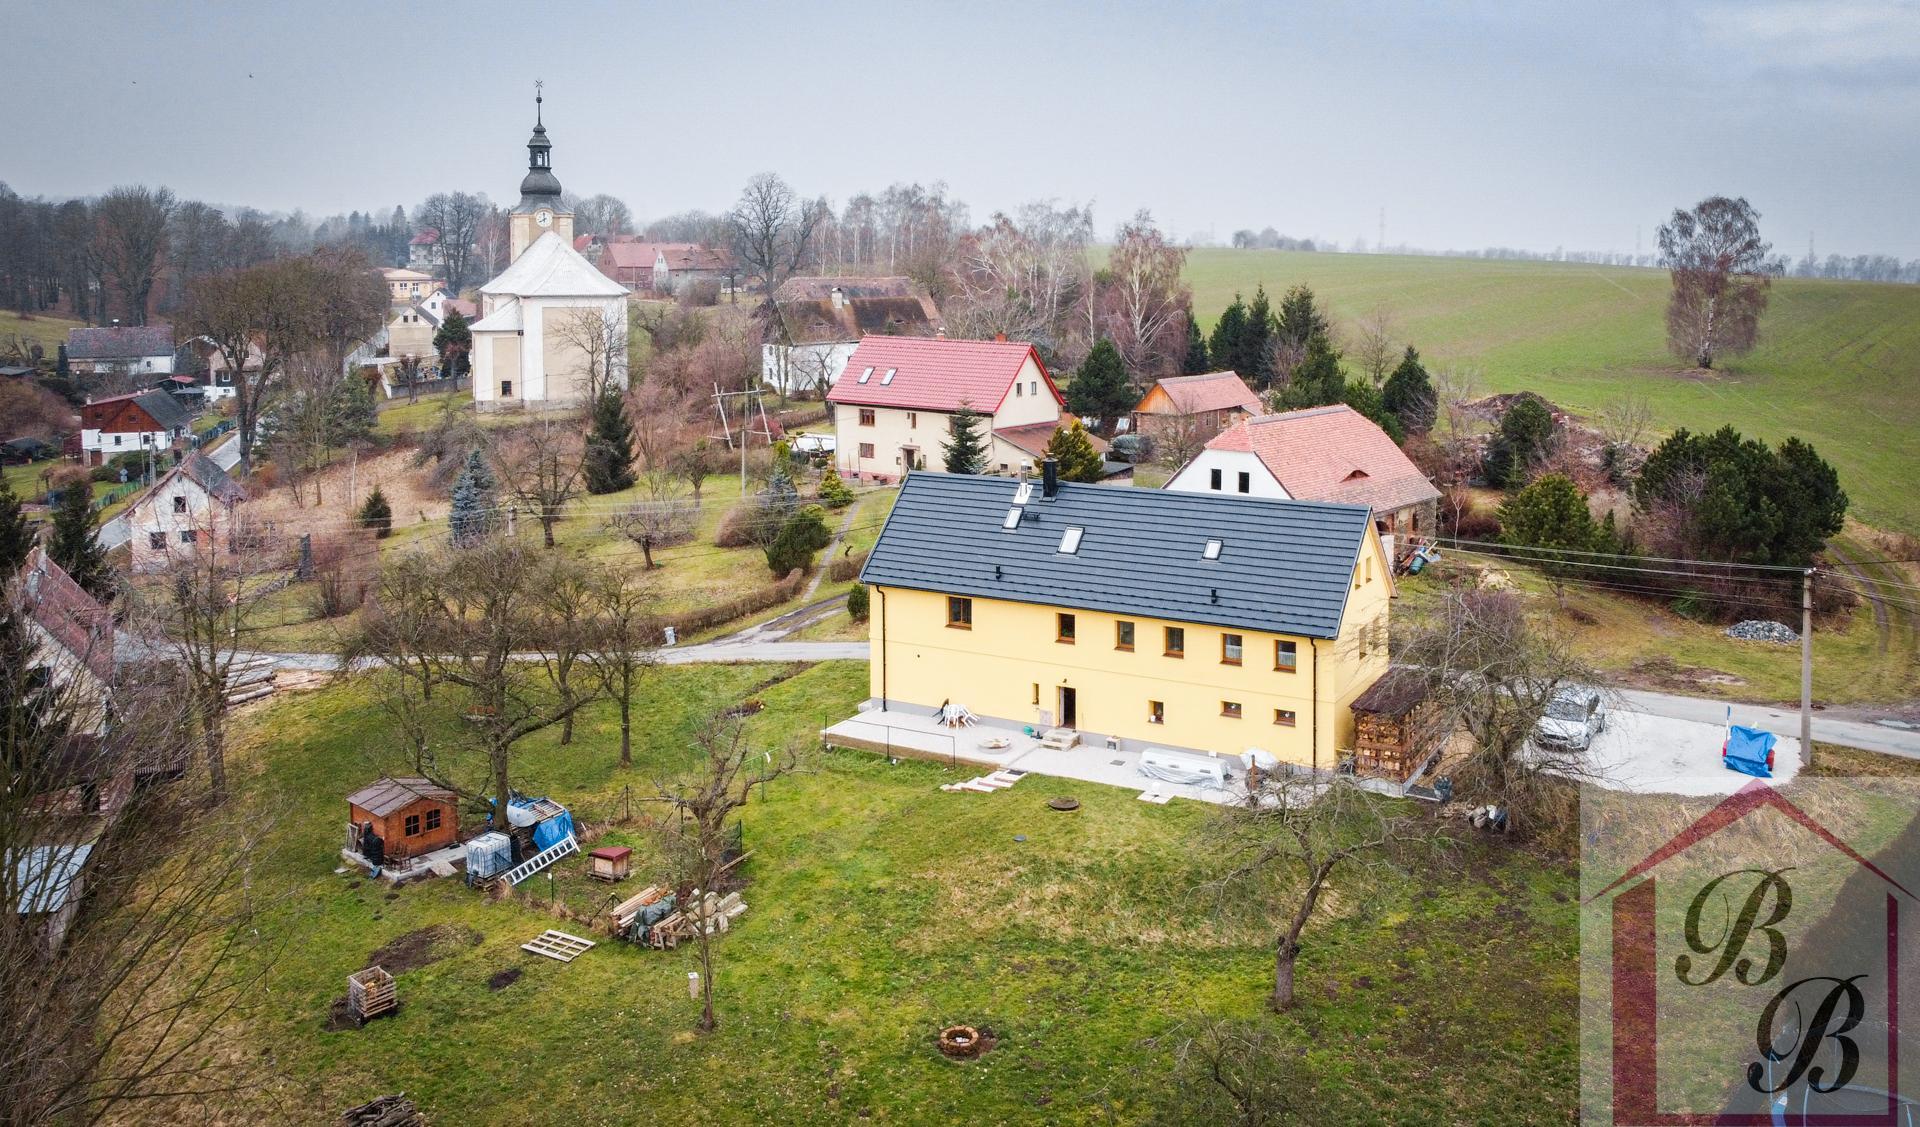 Prodej domu s apartmány a bytem, Višňová - Andělka, okres Liberec, hypotéka možná, obrázek č. 1